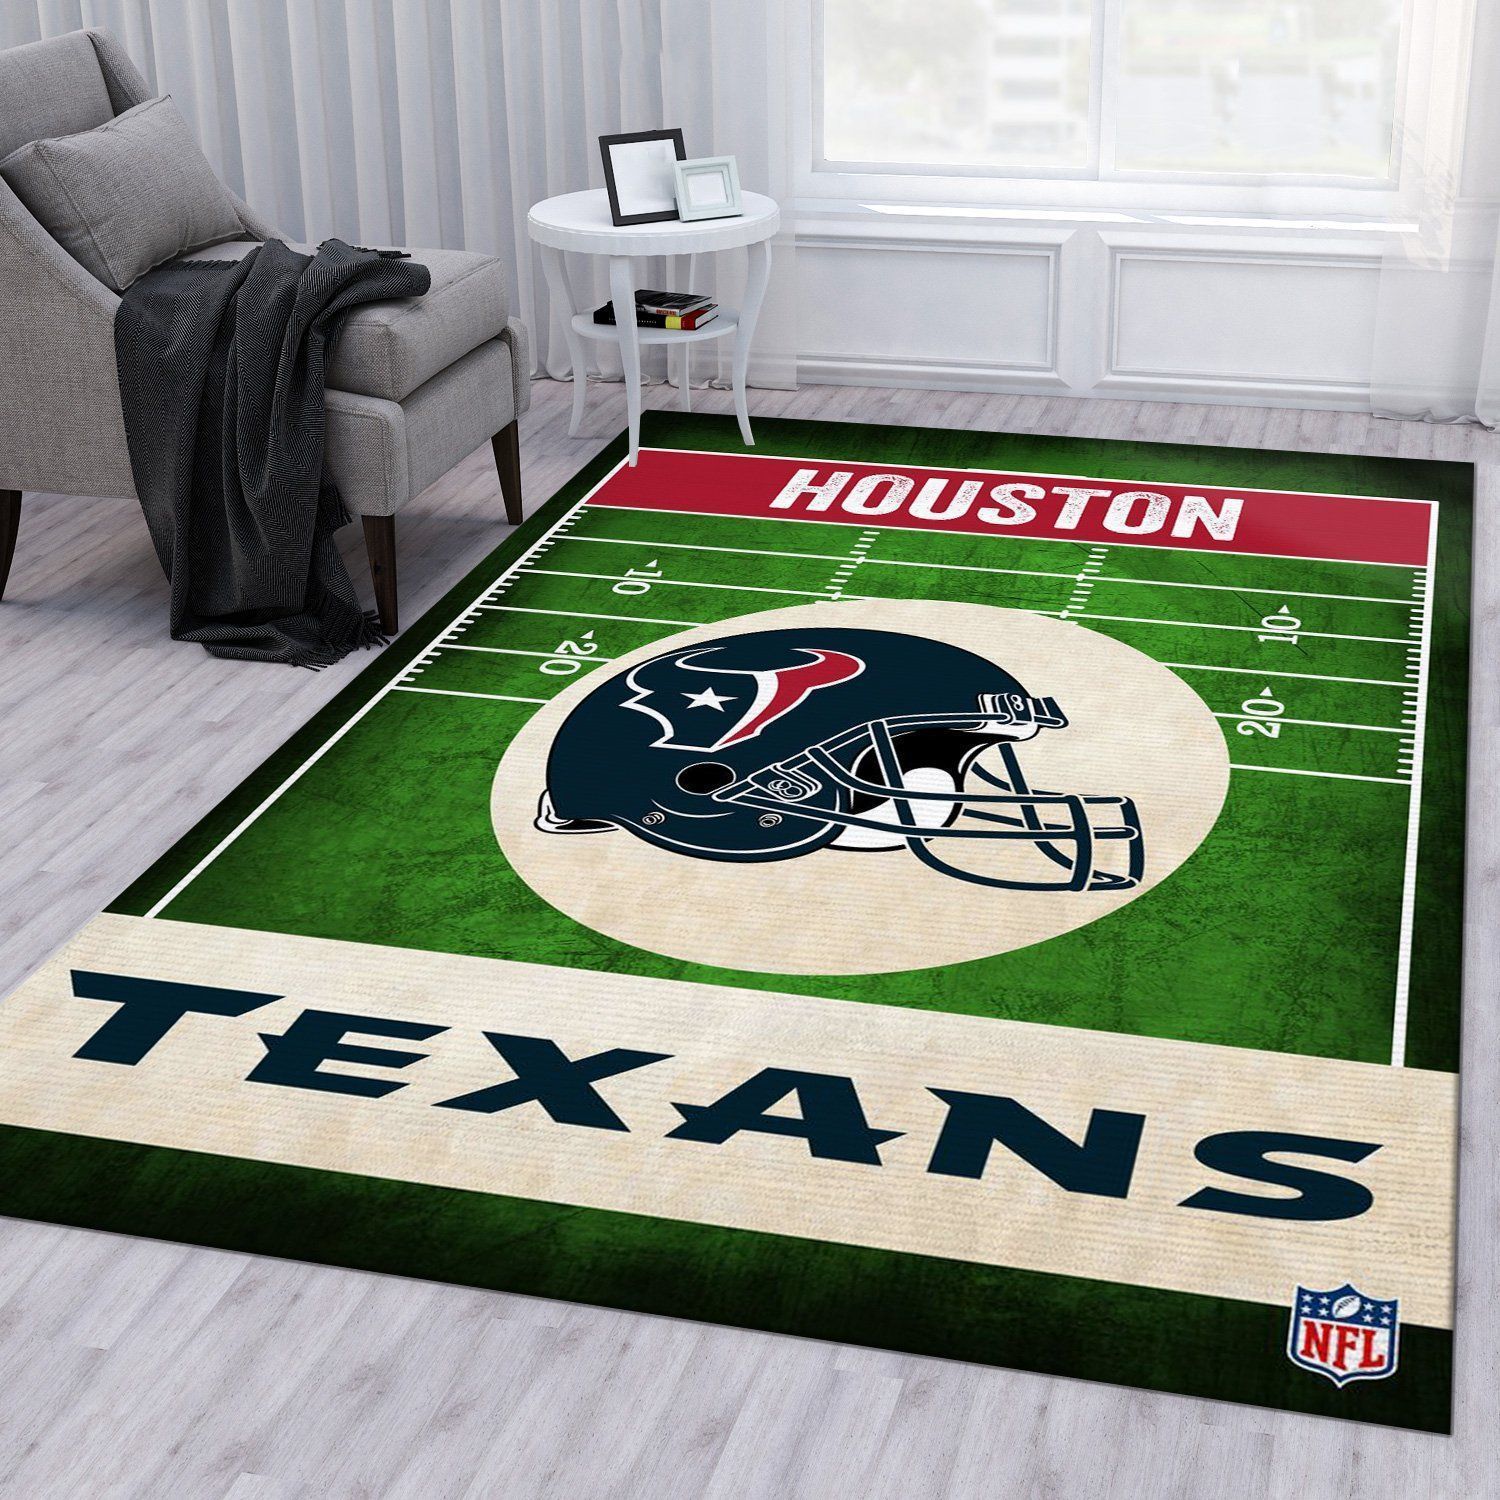 Houston Texans Nfl Rug Bedroom Rug Home Decor Floor Decor - Indoor Outdoor Rugs